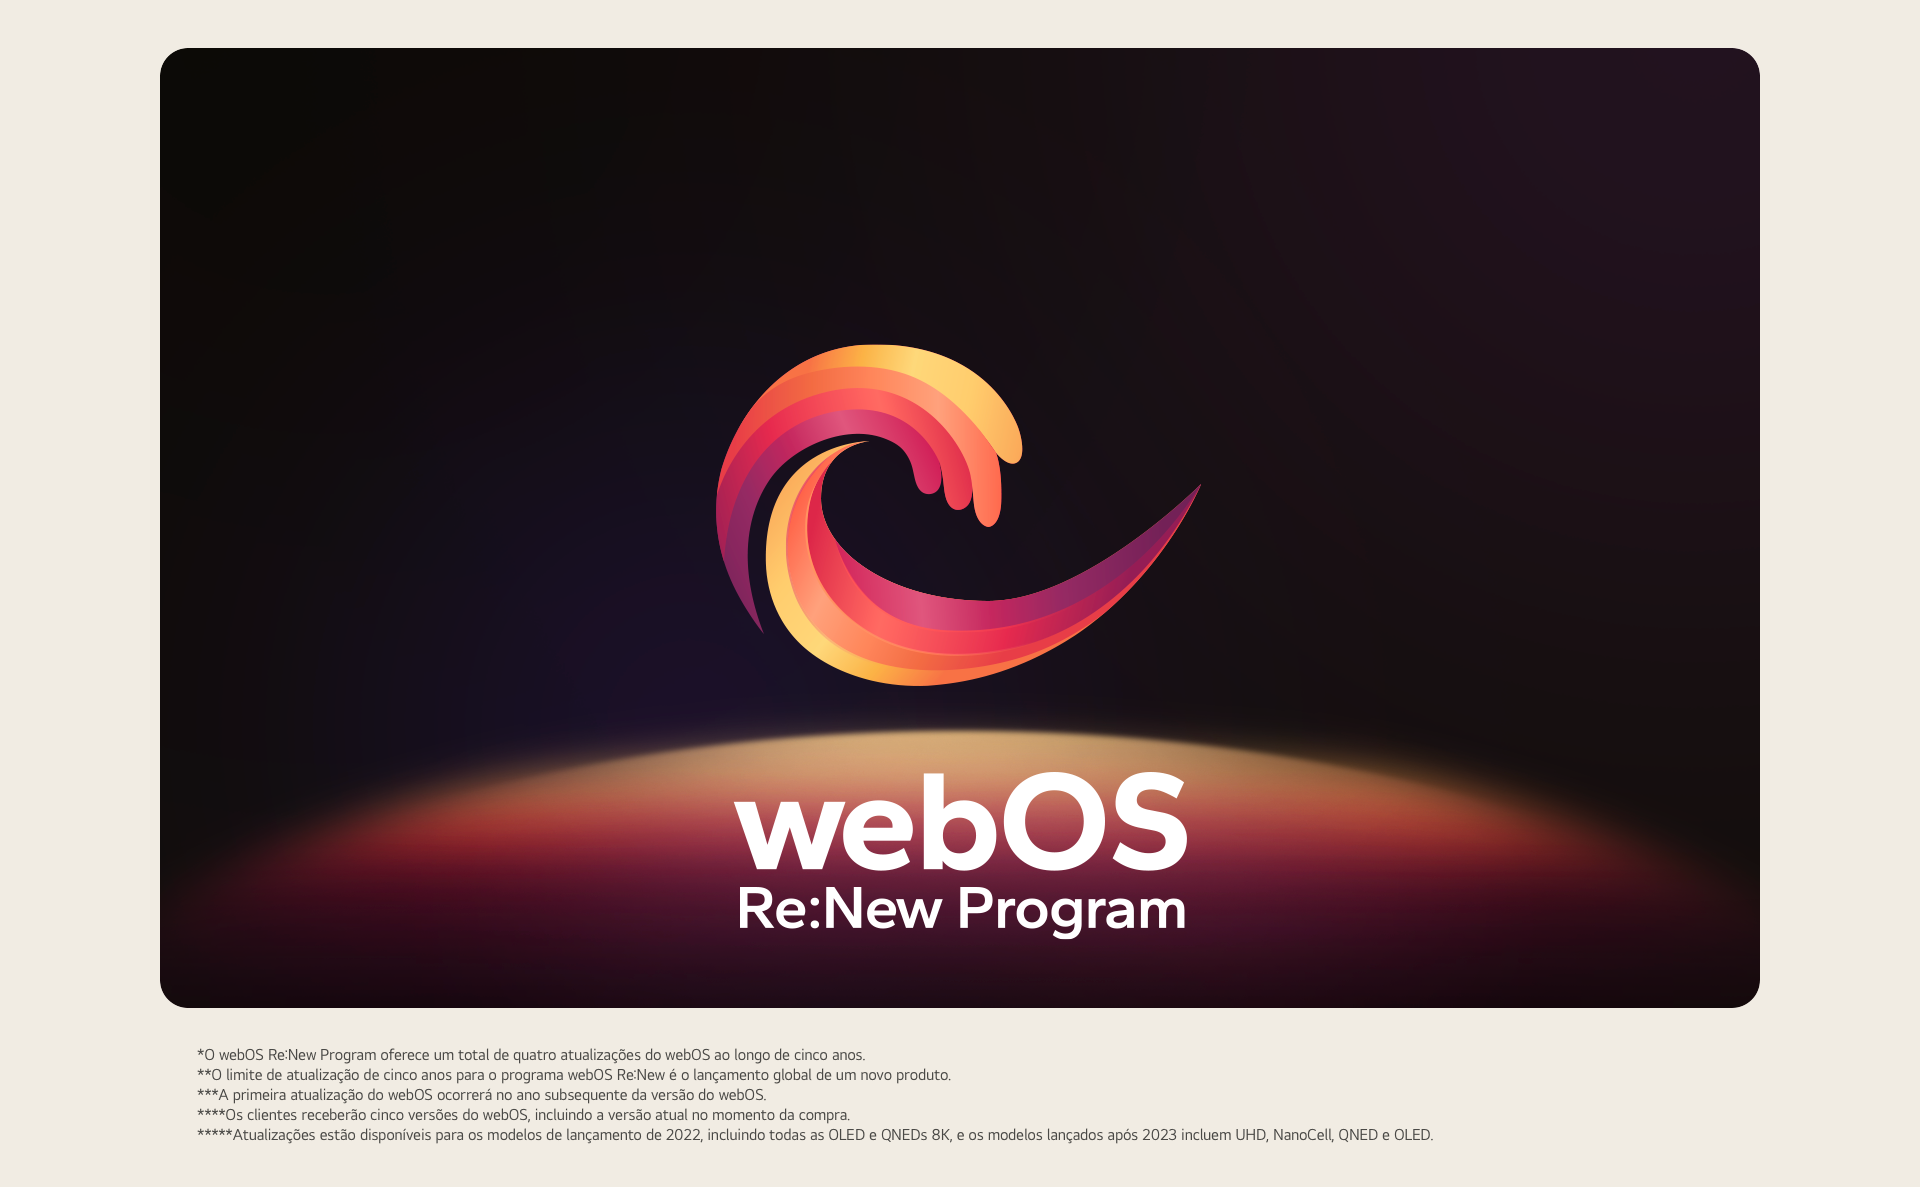 Logotipo do webOS Re:New Program apresentado sobre um fundo preto com a parte superior de uma esfera azul e roxa na parte inferior. 